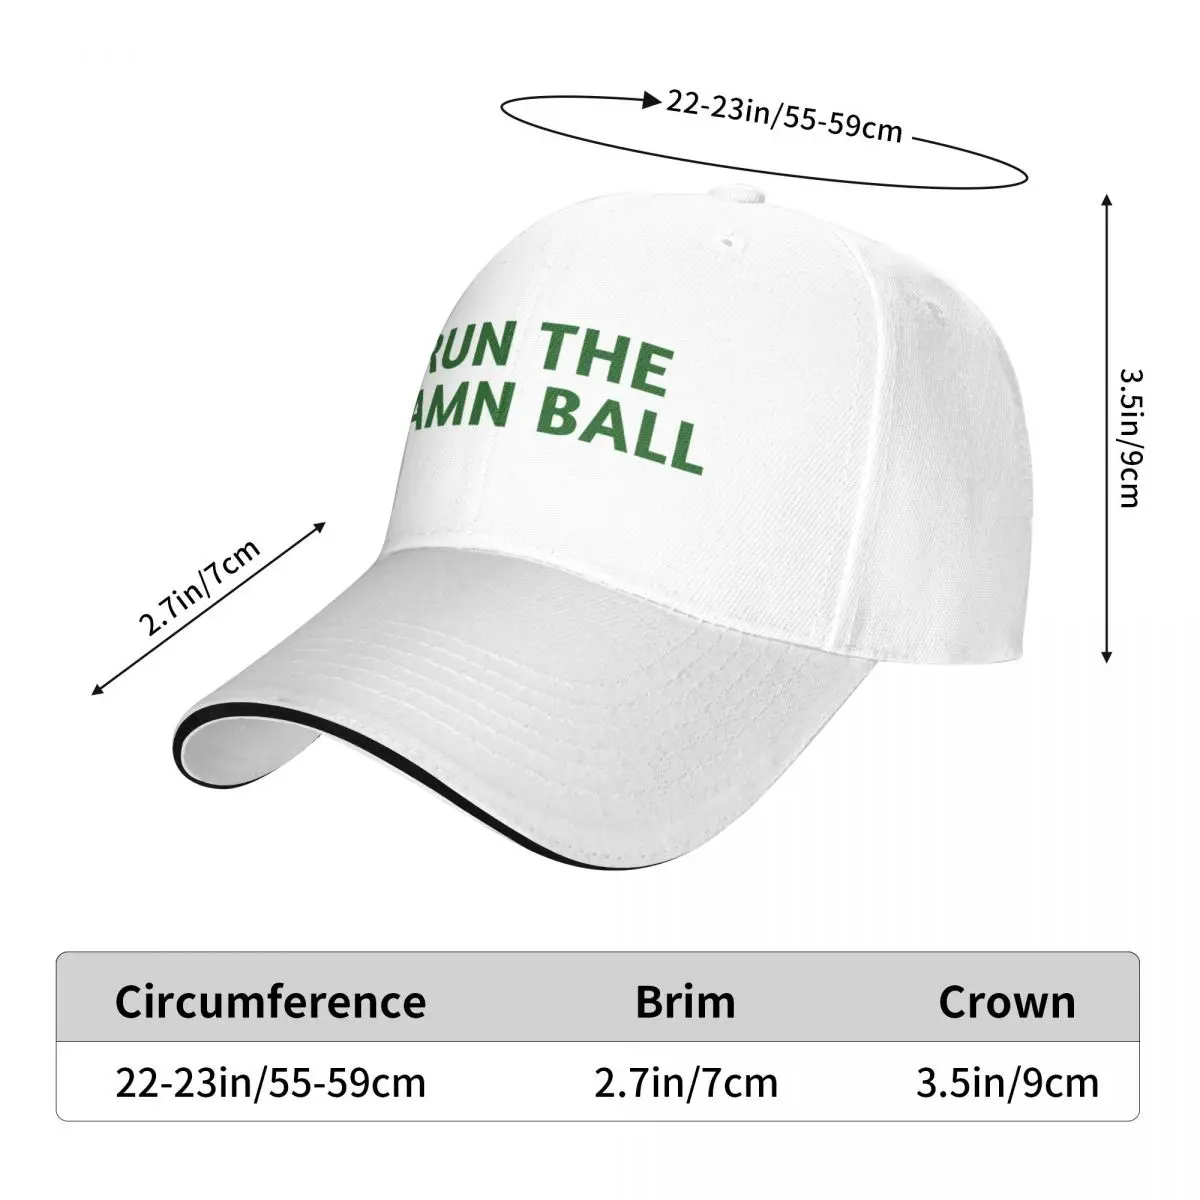 Run the damn топка / Зелен / Зелена шапка run the damn топка Бейзболна Шапка Аниме Шапка Шапка за голф Мъжки летни шапки, Шапка, Дамски Мъжки Изображение 5